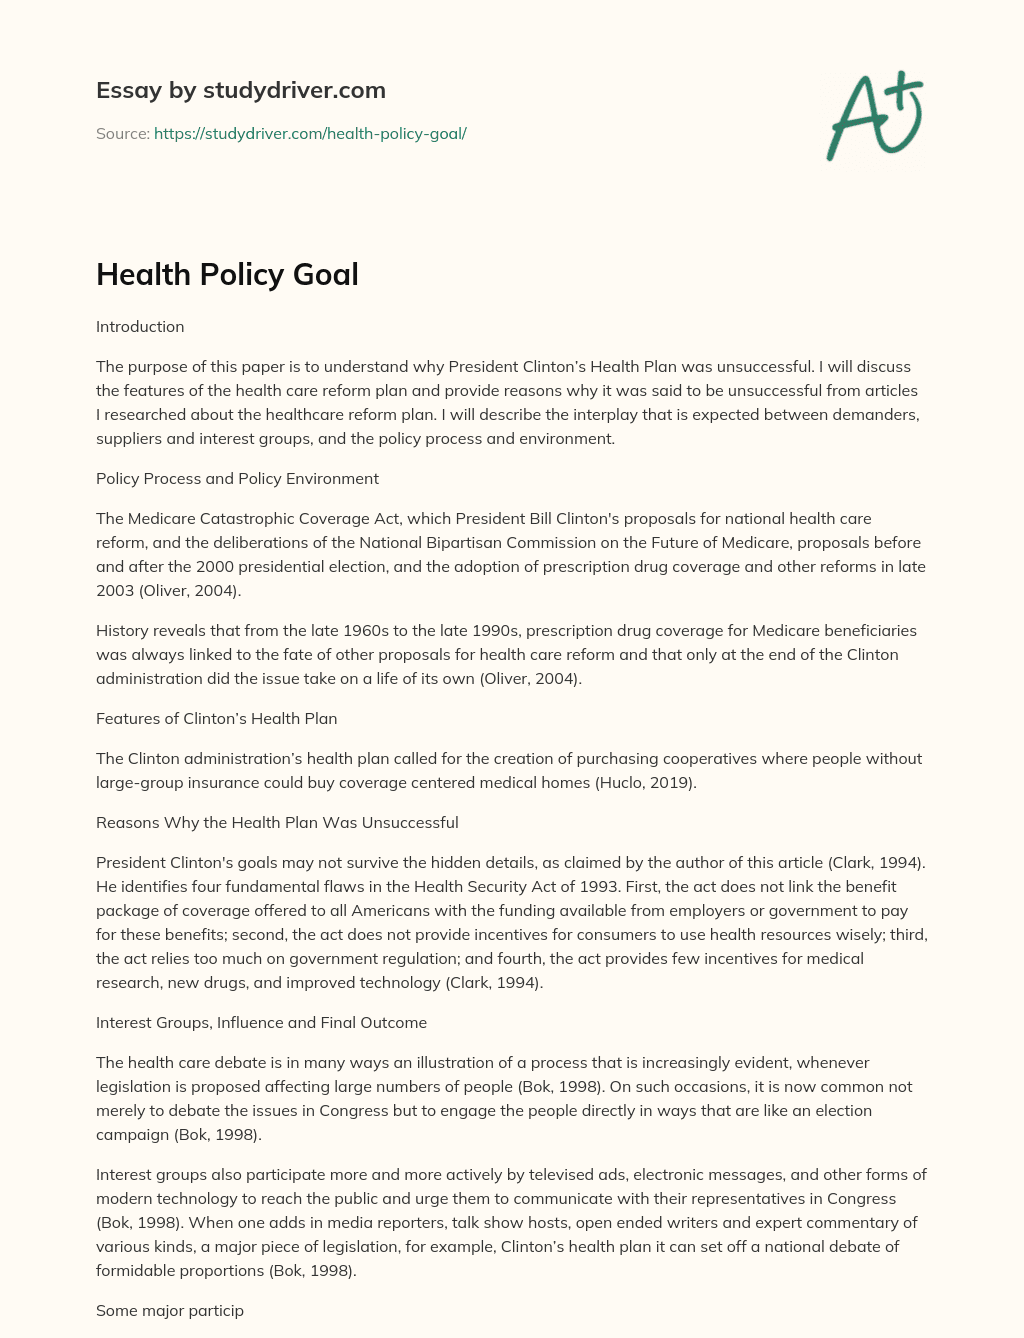 Health Policy Goal essay